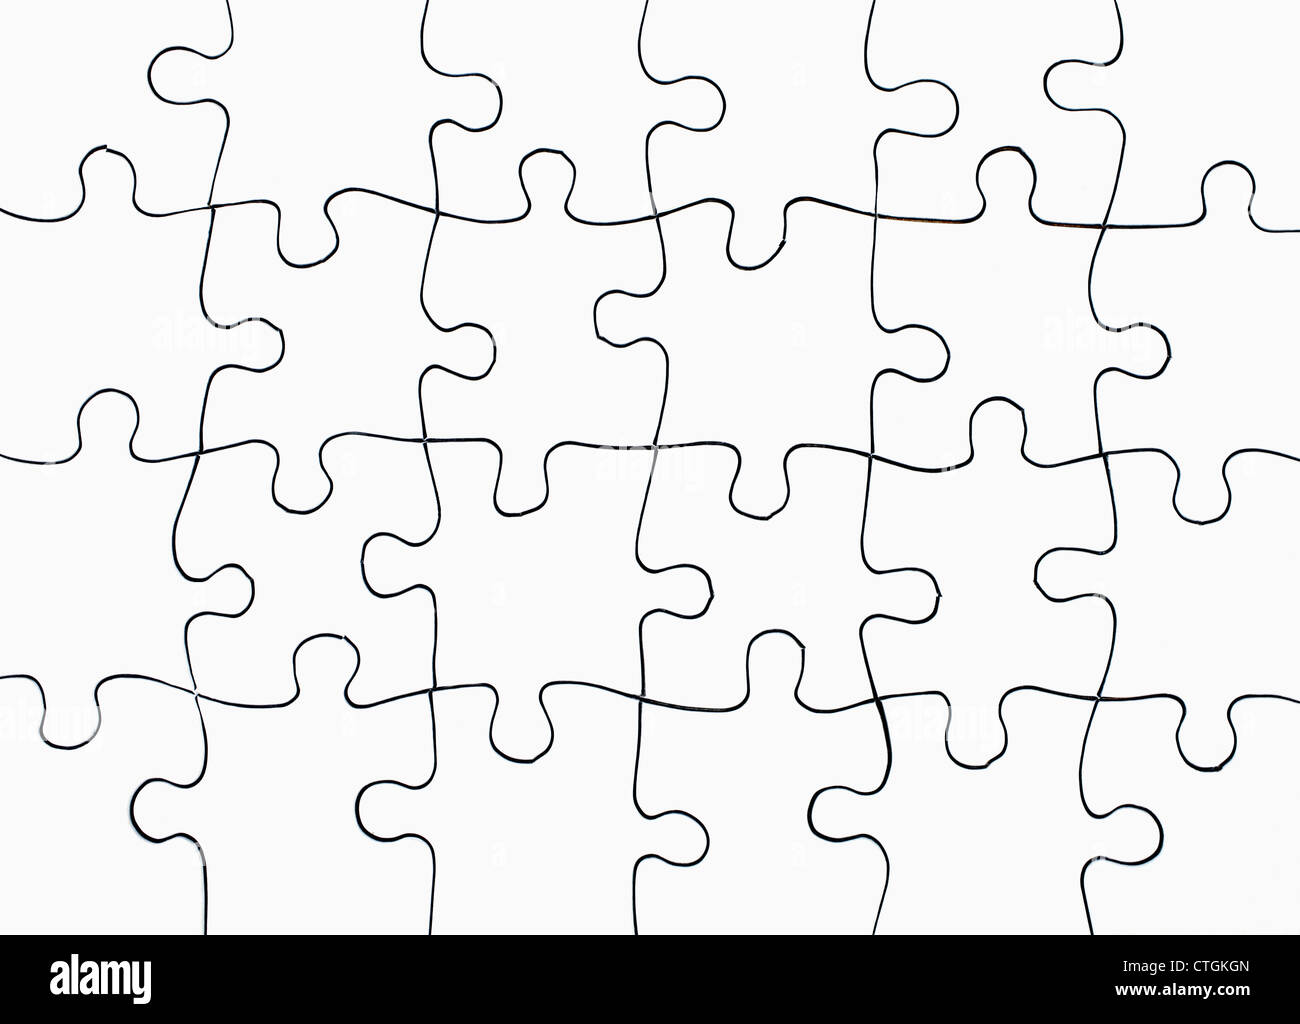 Blank jigsaw puzzle pieces Stock Photo - Alamy